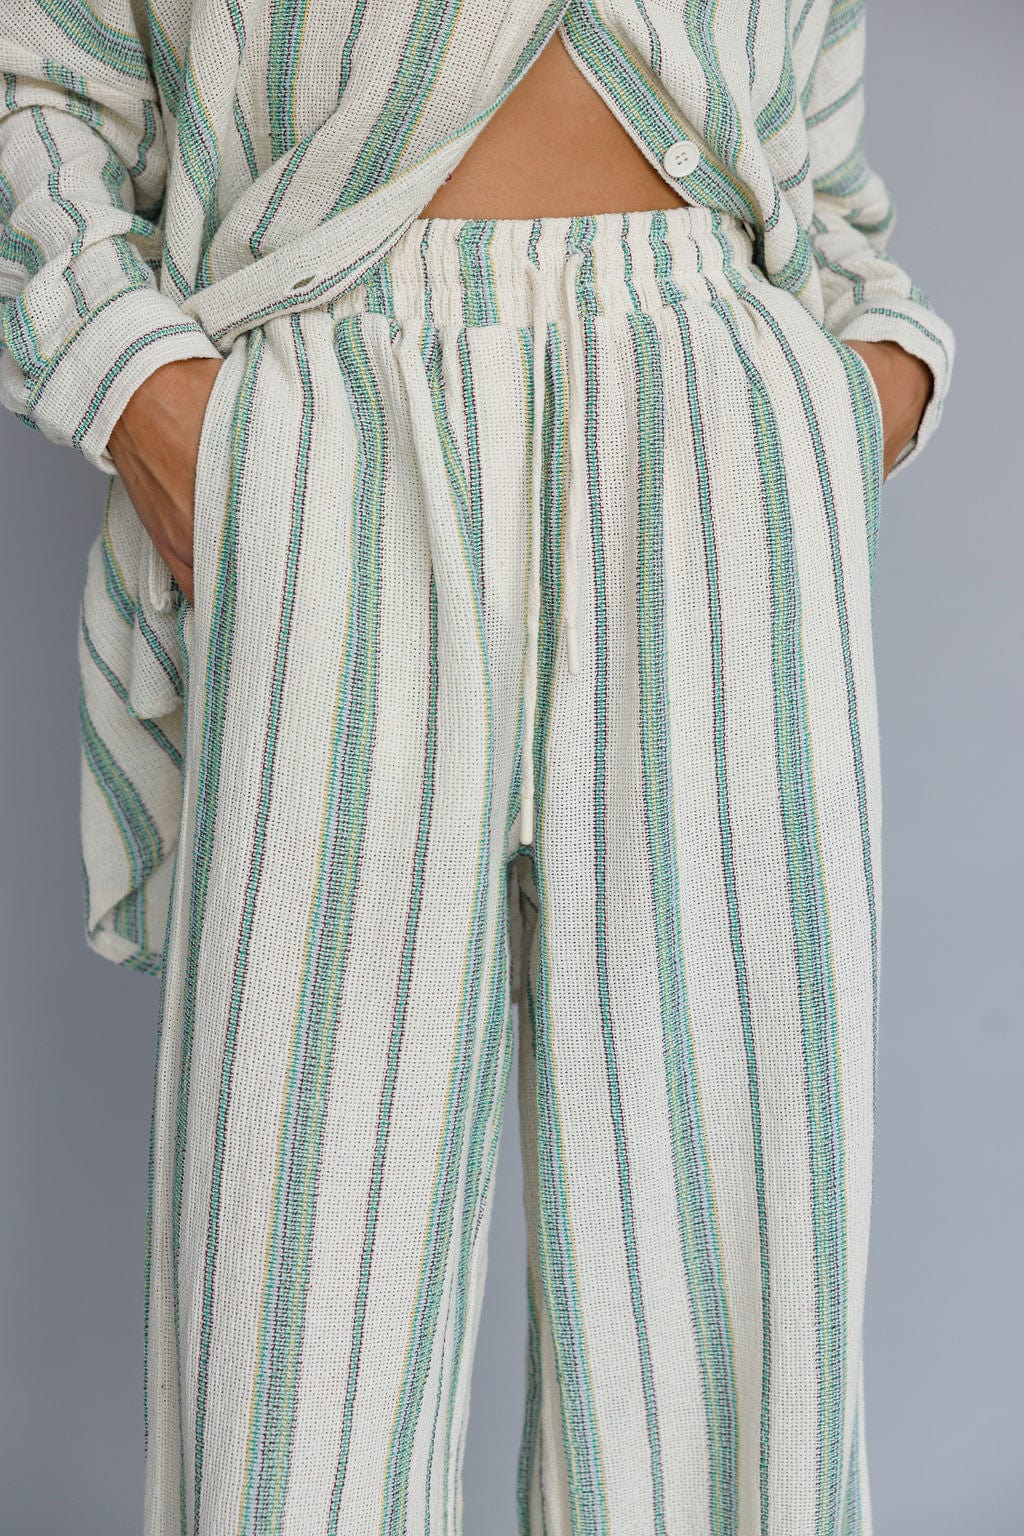 מכנסי קלואי סטרייפס | בז'/ירוק